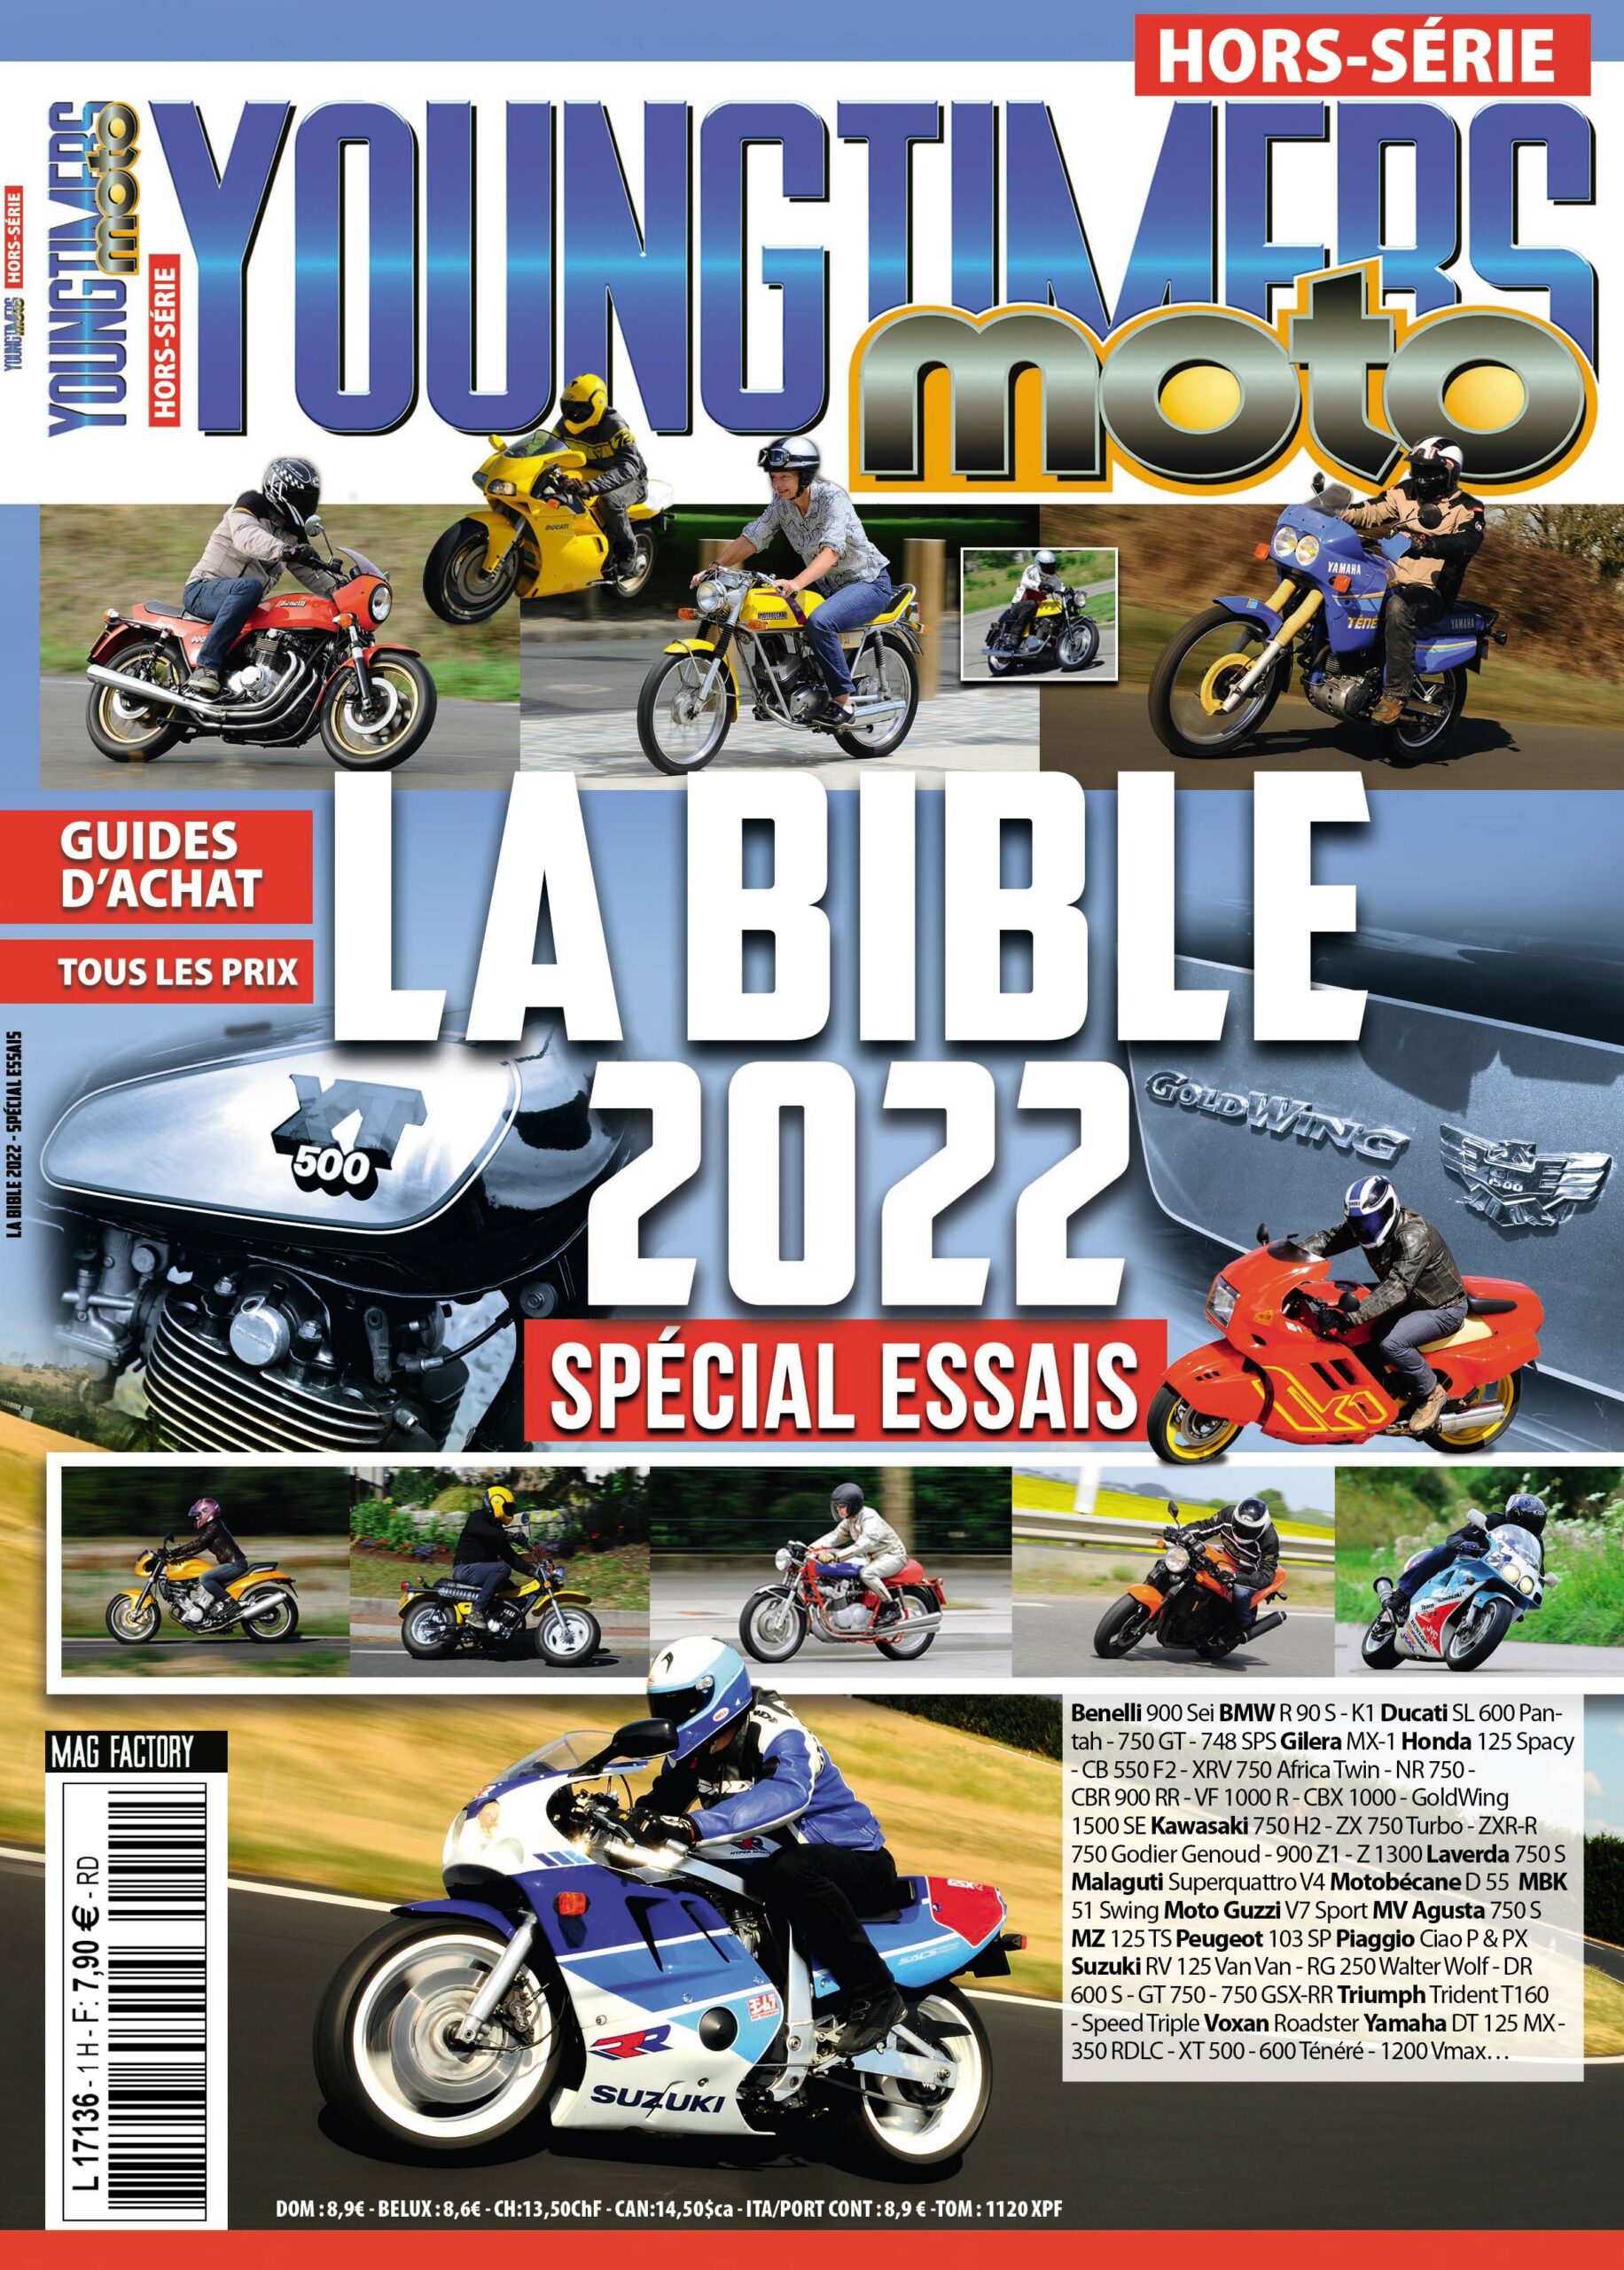 NOUVEAU : Youngtimers Moto hors-série Bible 2022 !